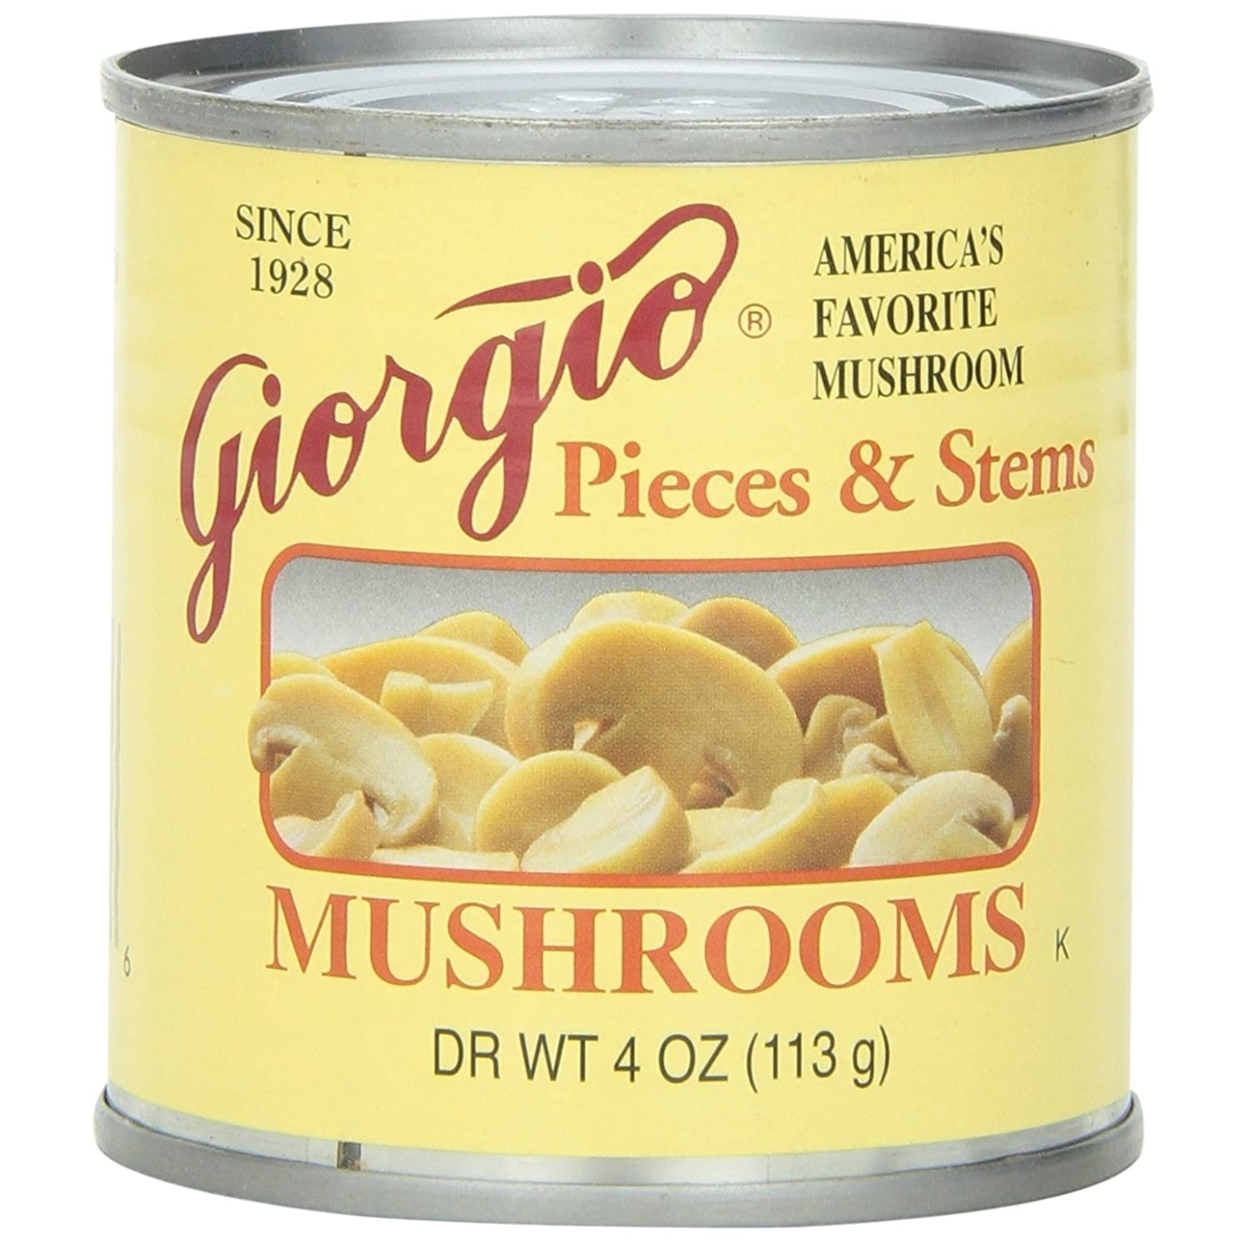 Giorgio Mushroom Pieces And Stems - 12/4 Ounce